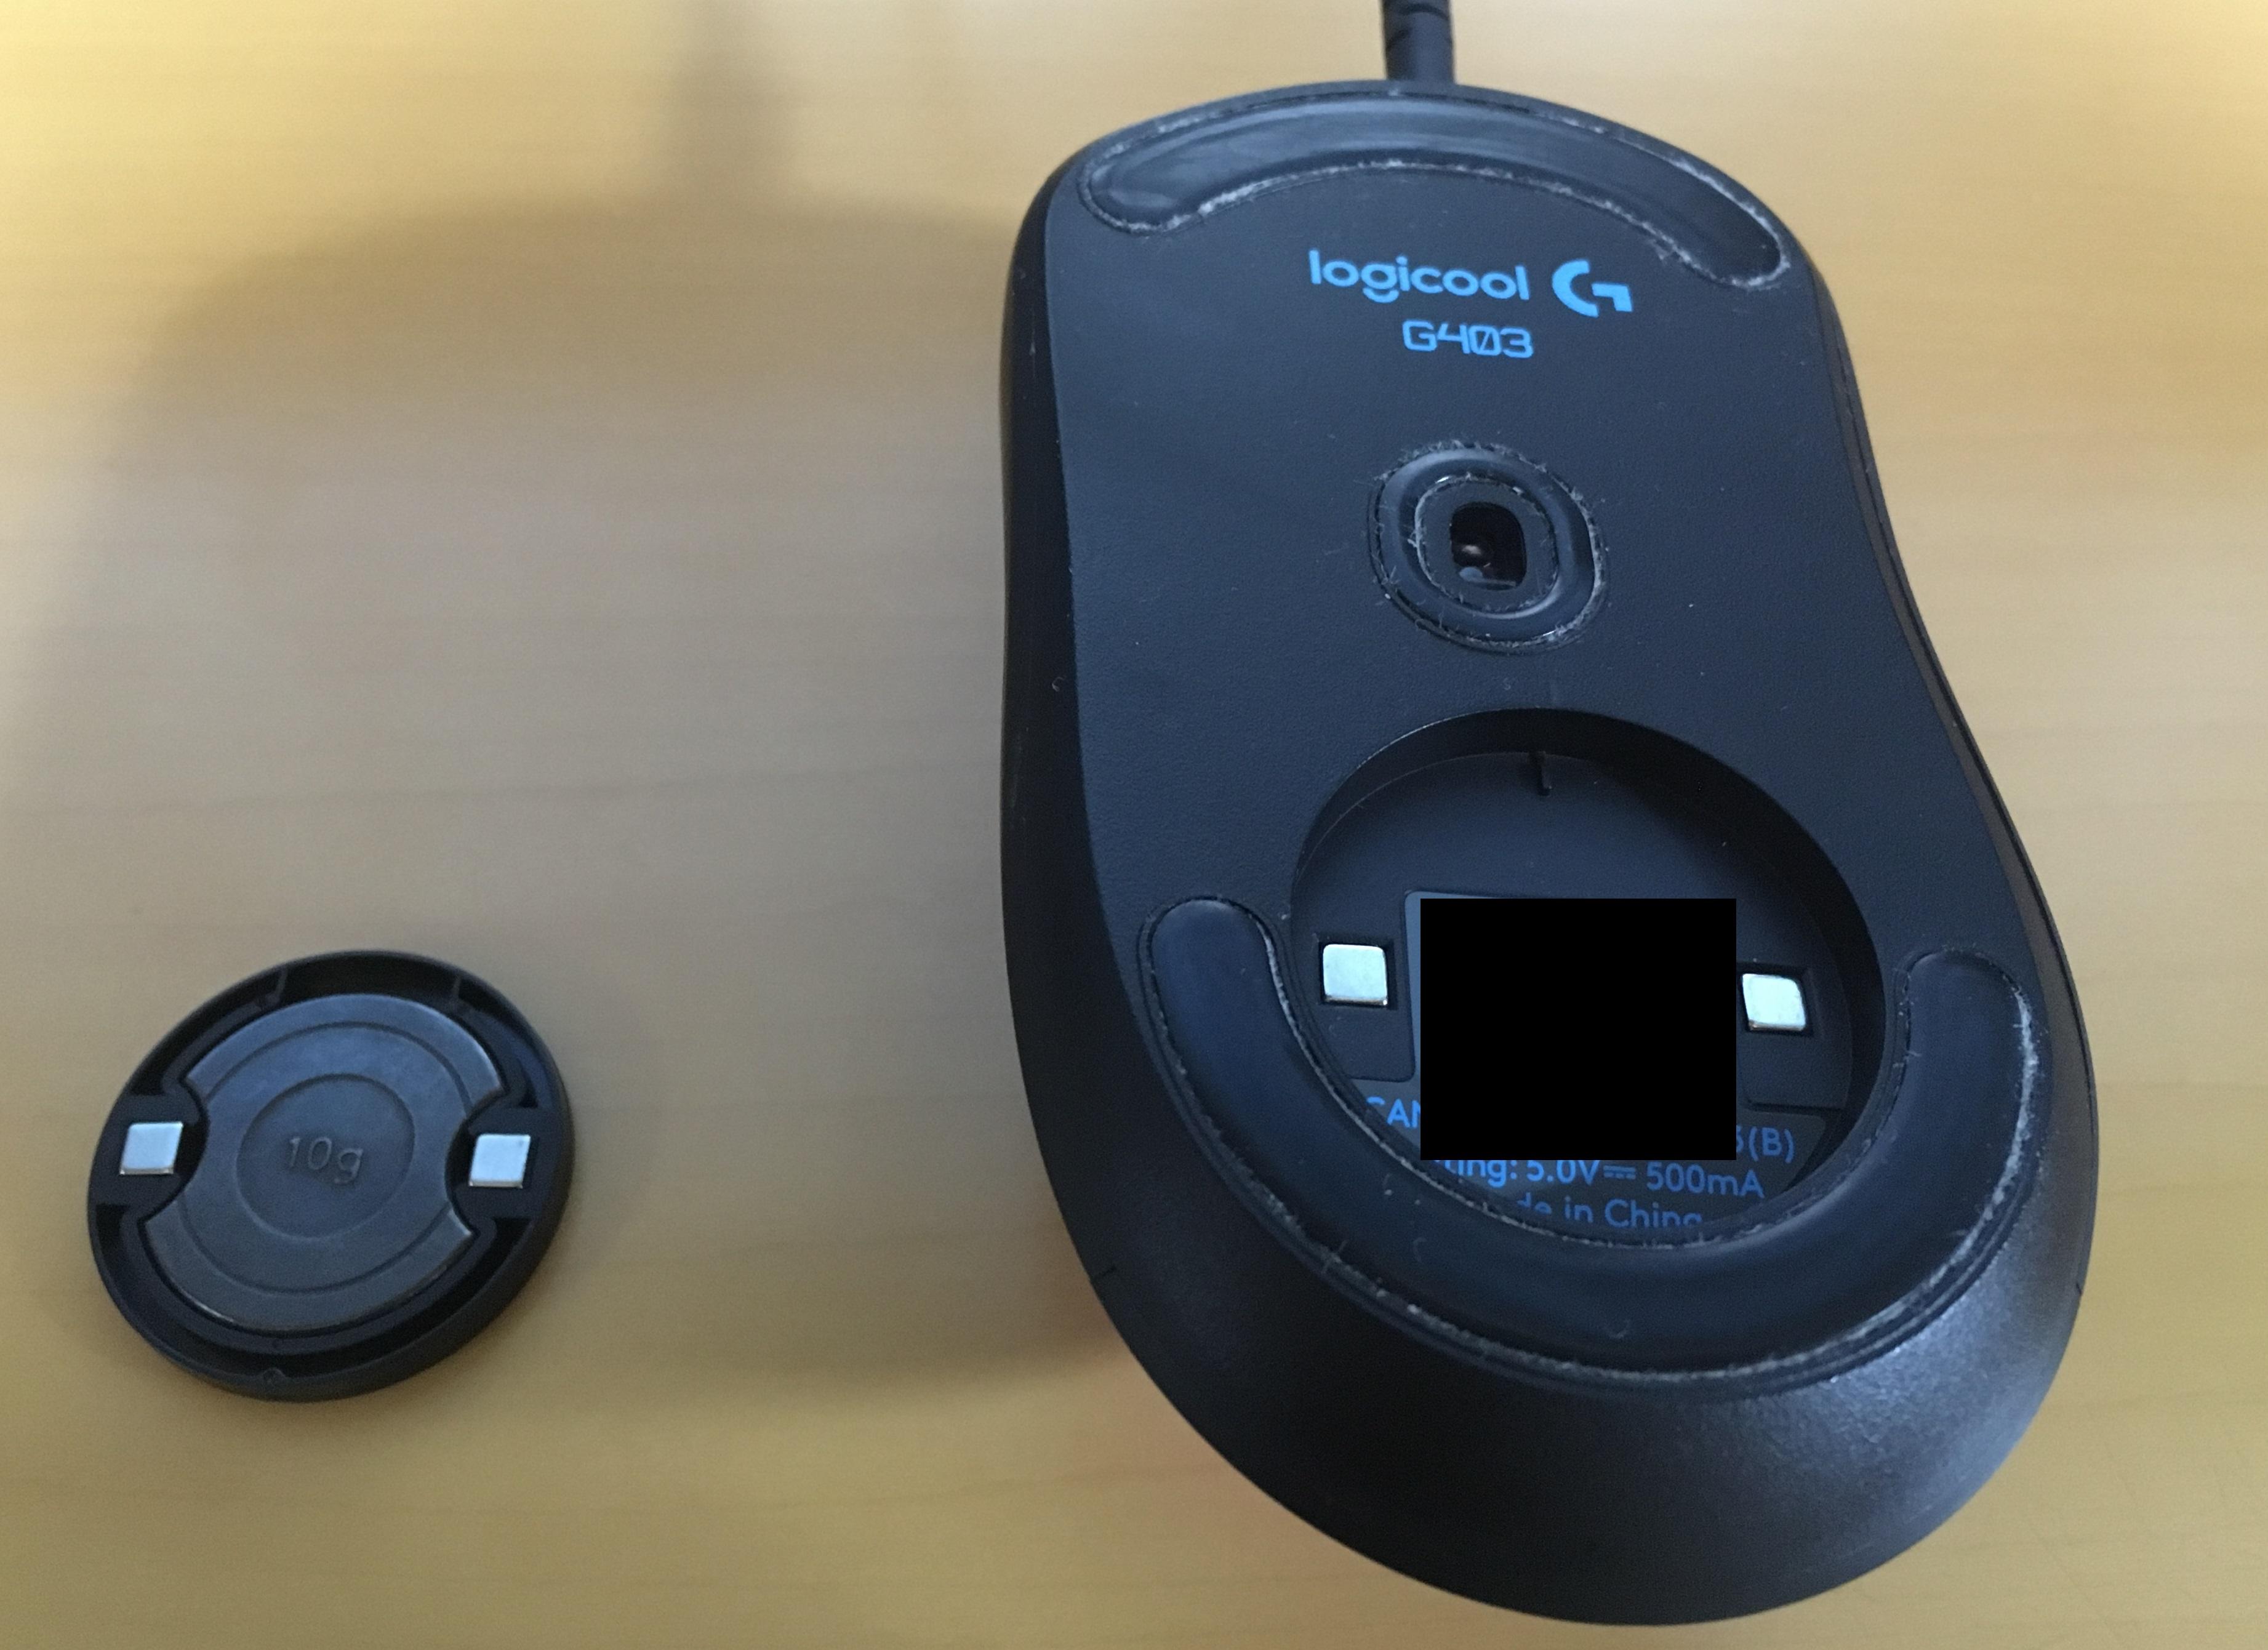 必要十分なボタン数と機能性を備えたマウス Logicool ロジクール G403 Prodigy 有線ゲーミングマウス G403のレビュー ジグソー レビューメディア